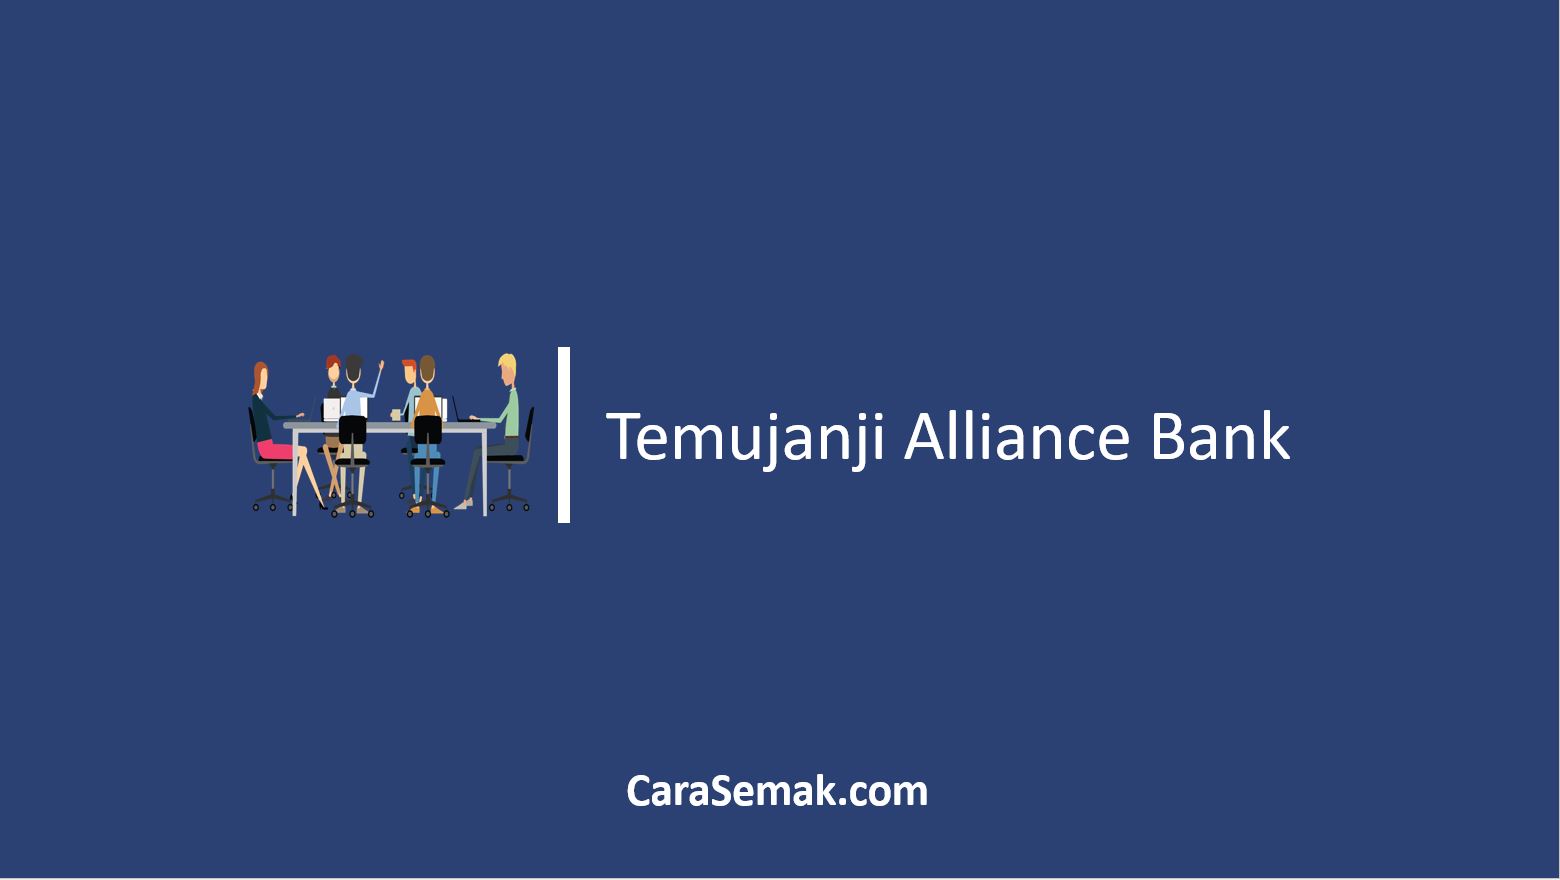 Temujanji Alliance Bank